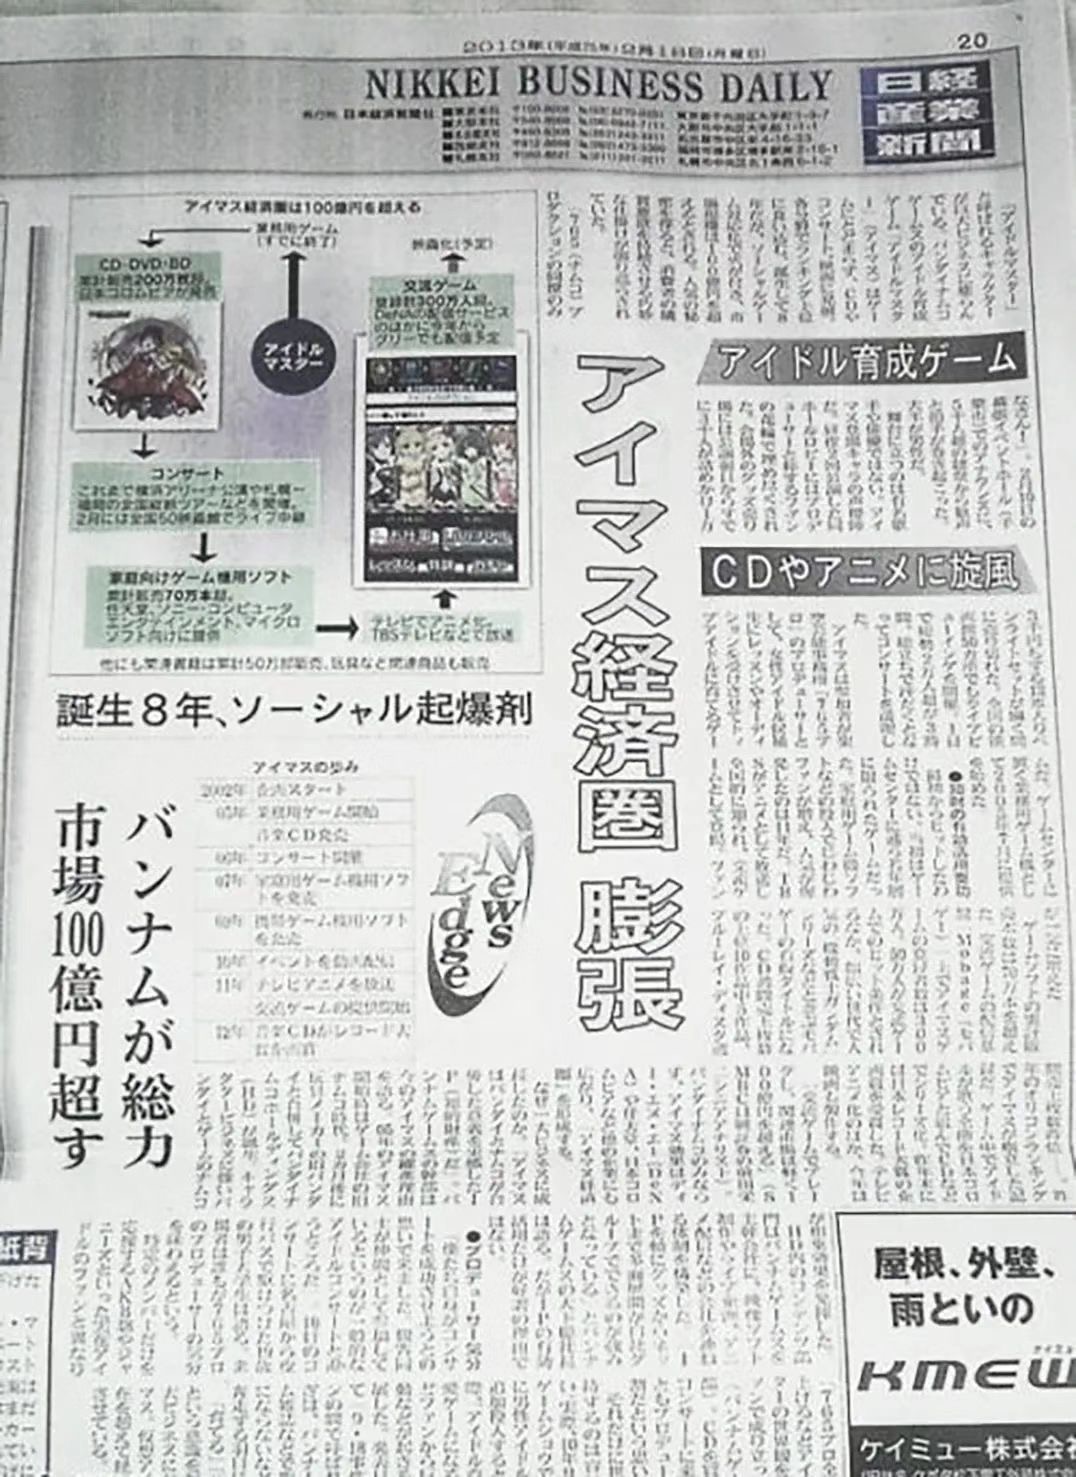 《日经产业新闻》刊登的关于“偶像大师”经济圈的报道